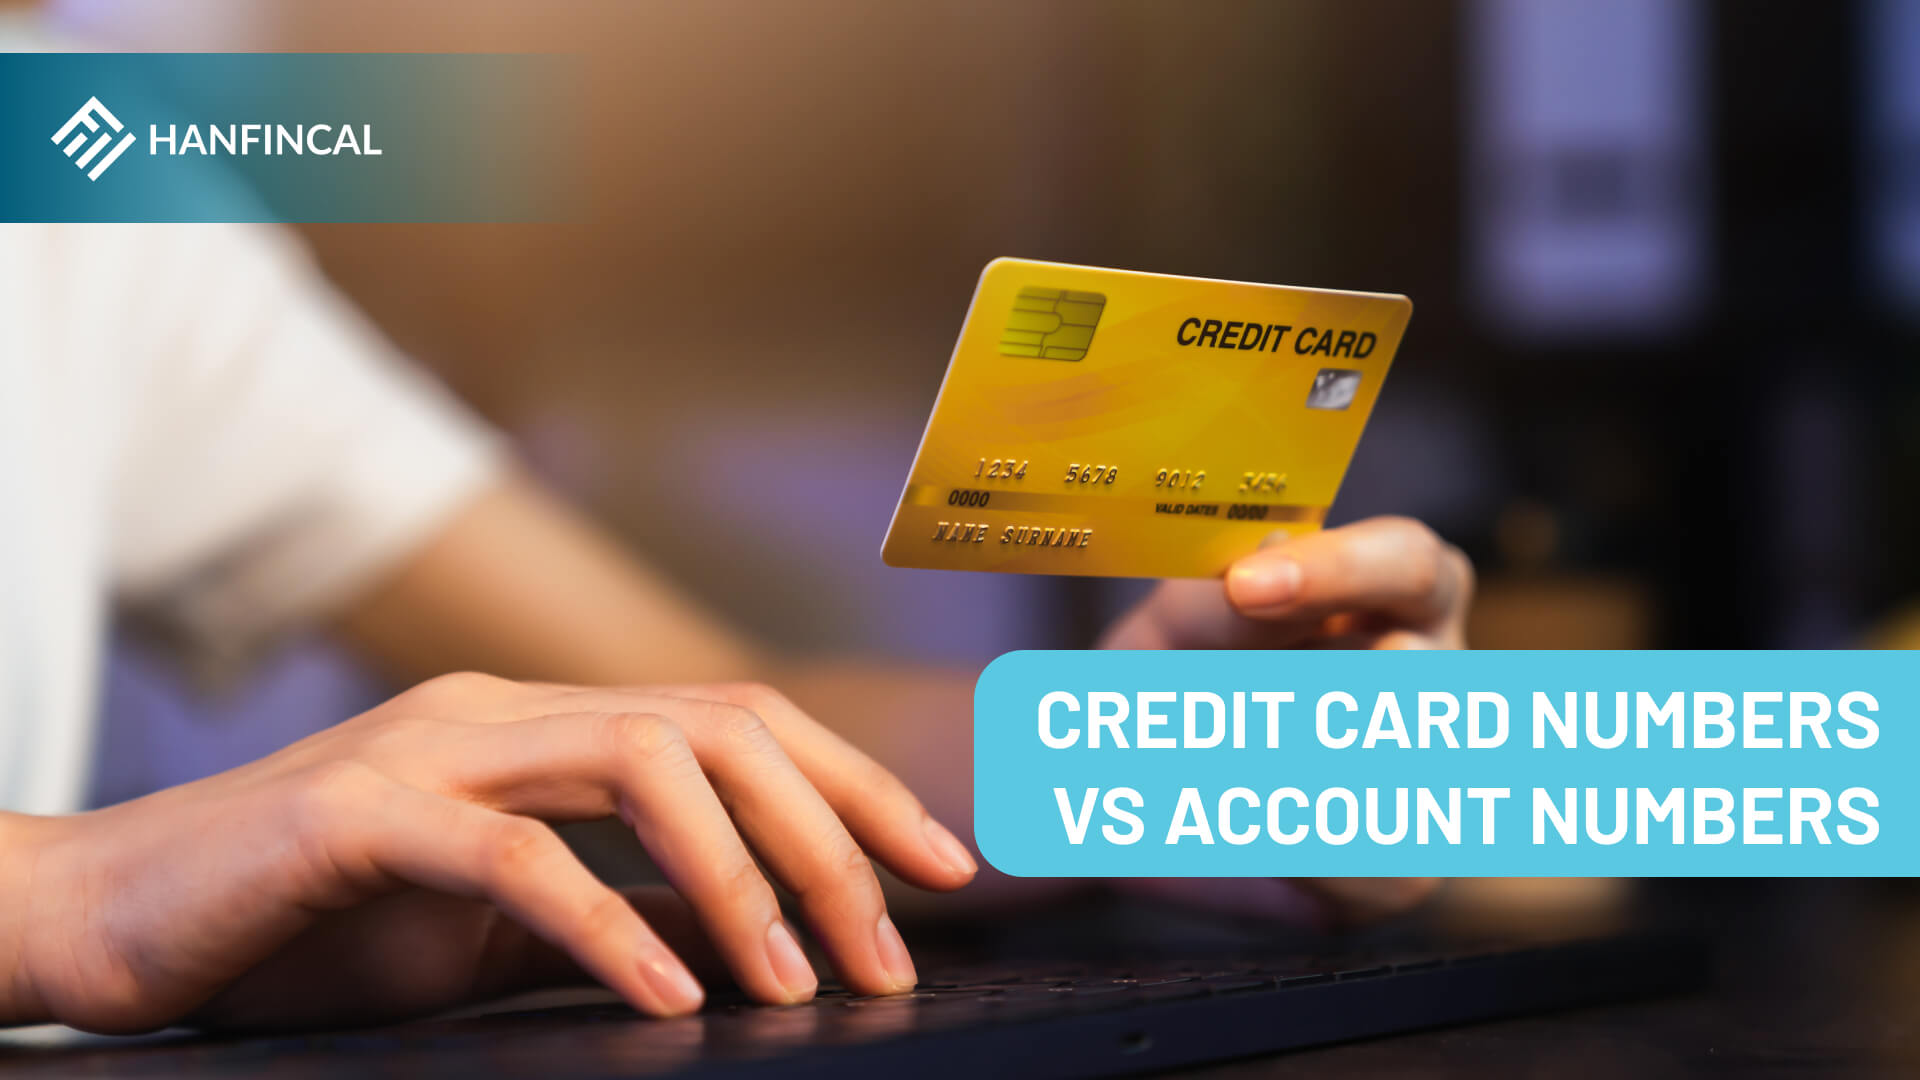 Credit card numbers versus account numbers